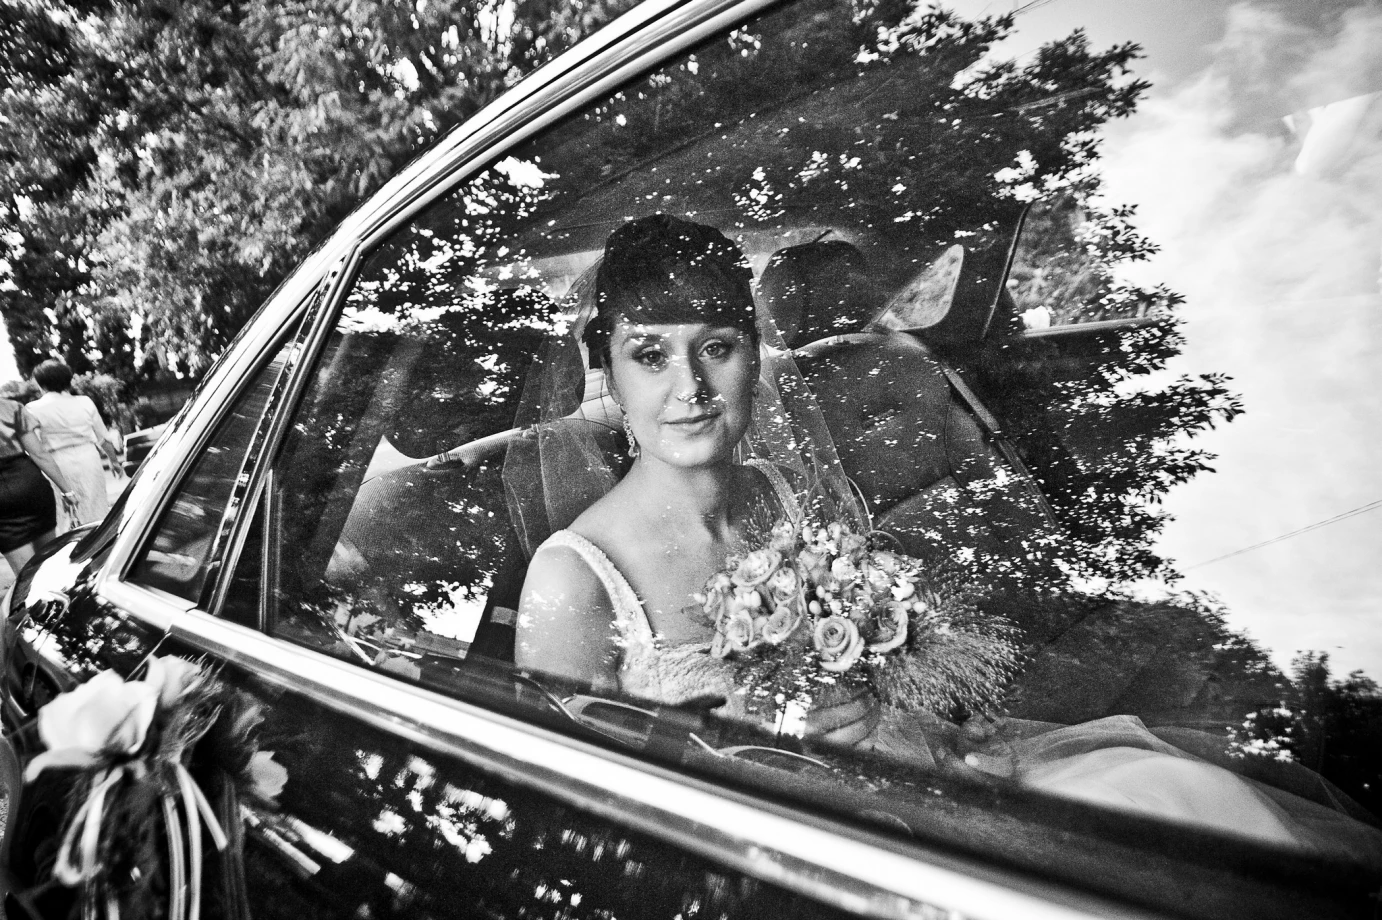 zdjęcia warszawa fotograf daniel-wojtczak portfolio zdjecia slubne inspiracje wesele plener slubny